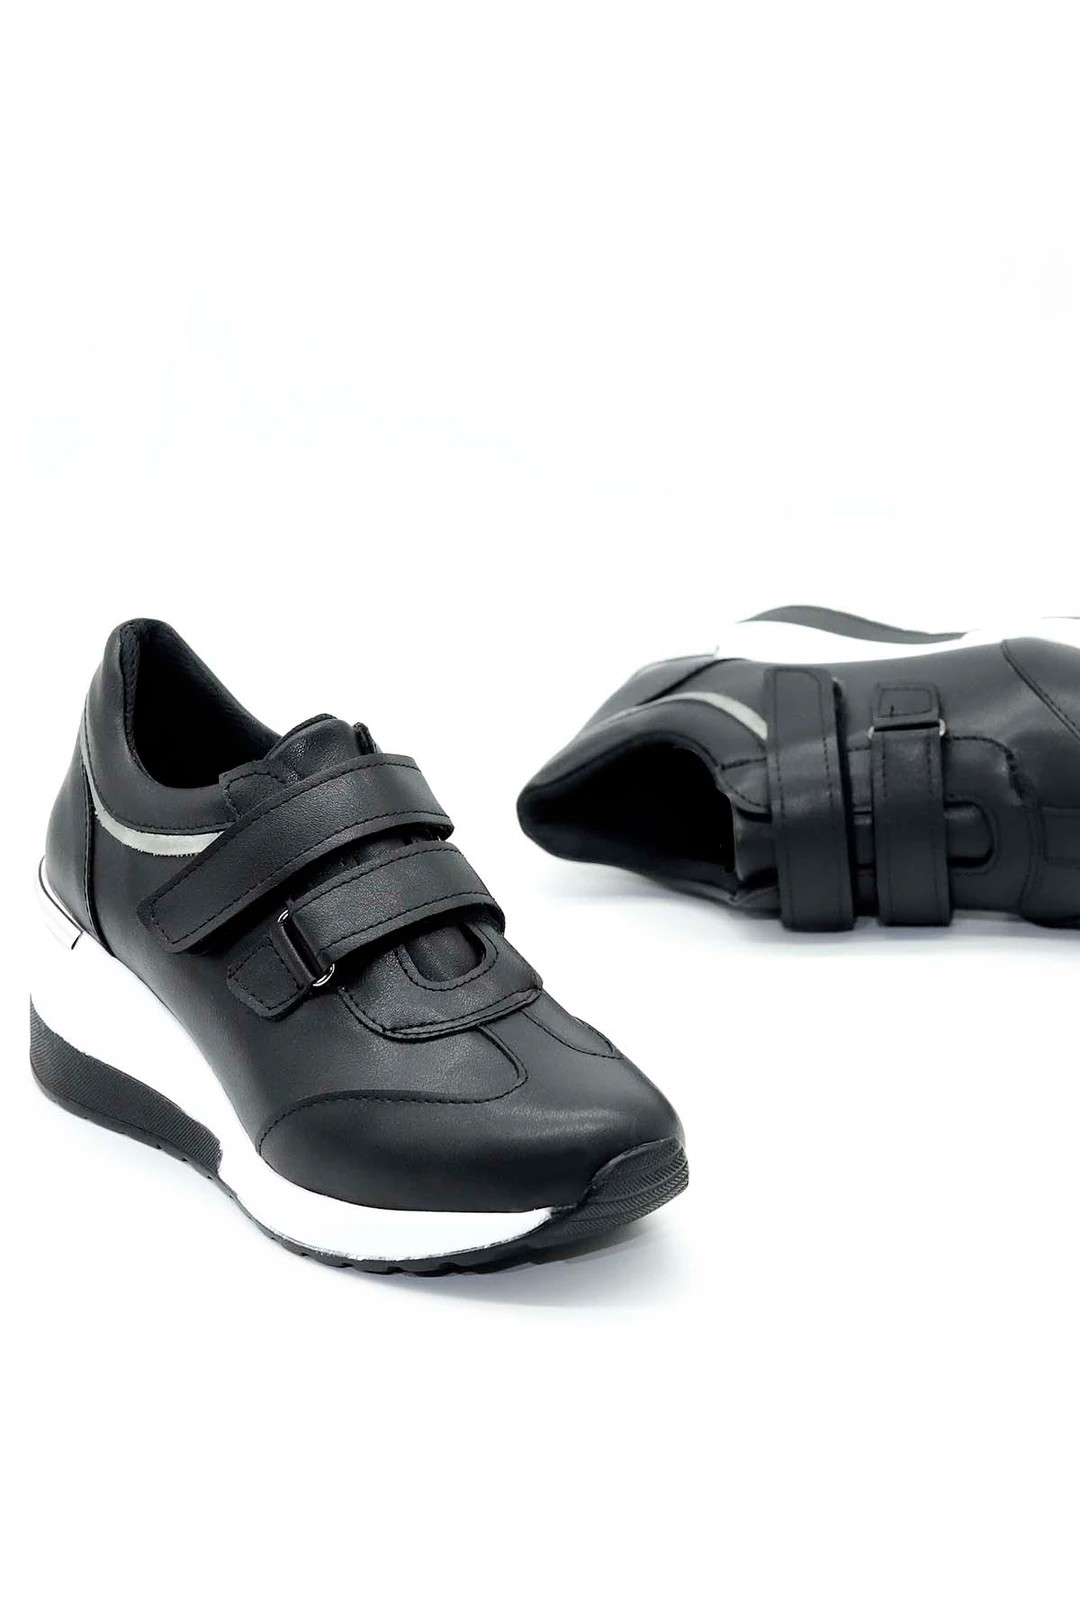 Gina Çırtlı Spor Ayakkabı Siyaz Beyaz Taban